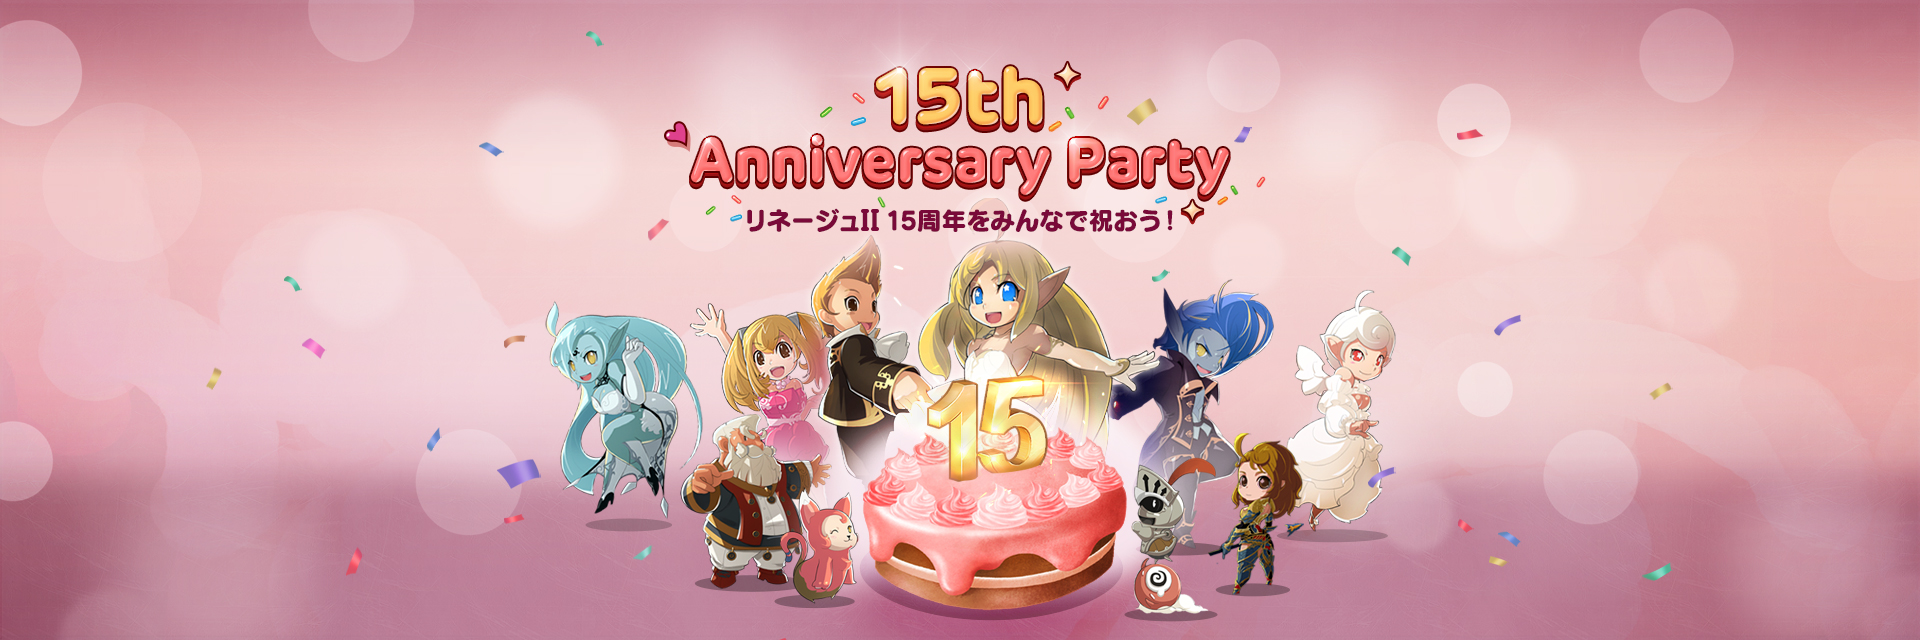 「15th Anniversary Party」ライブクラシック同時開催☆